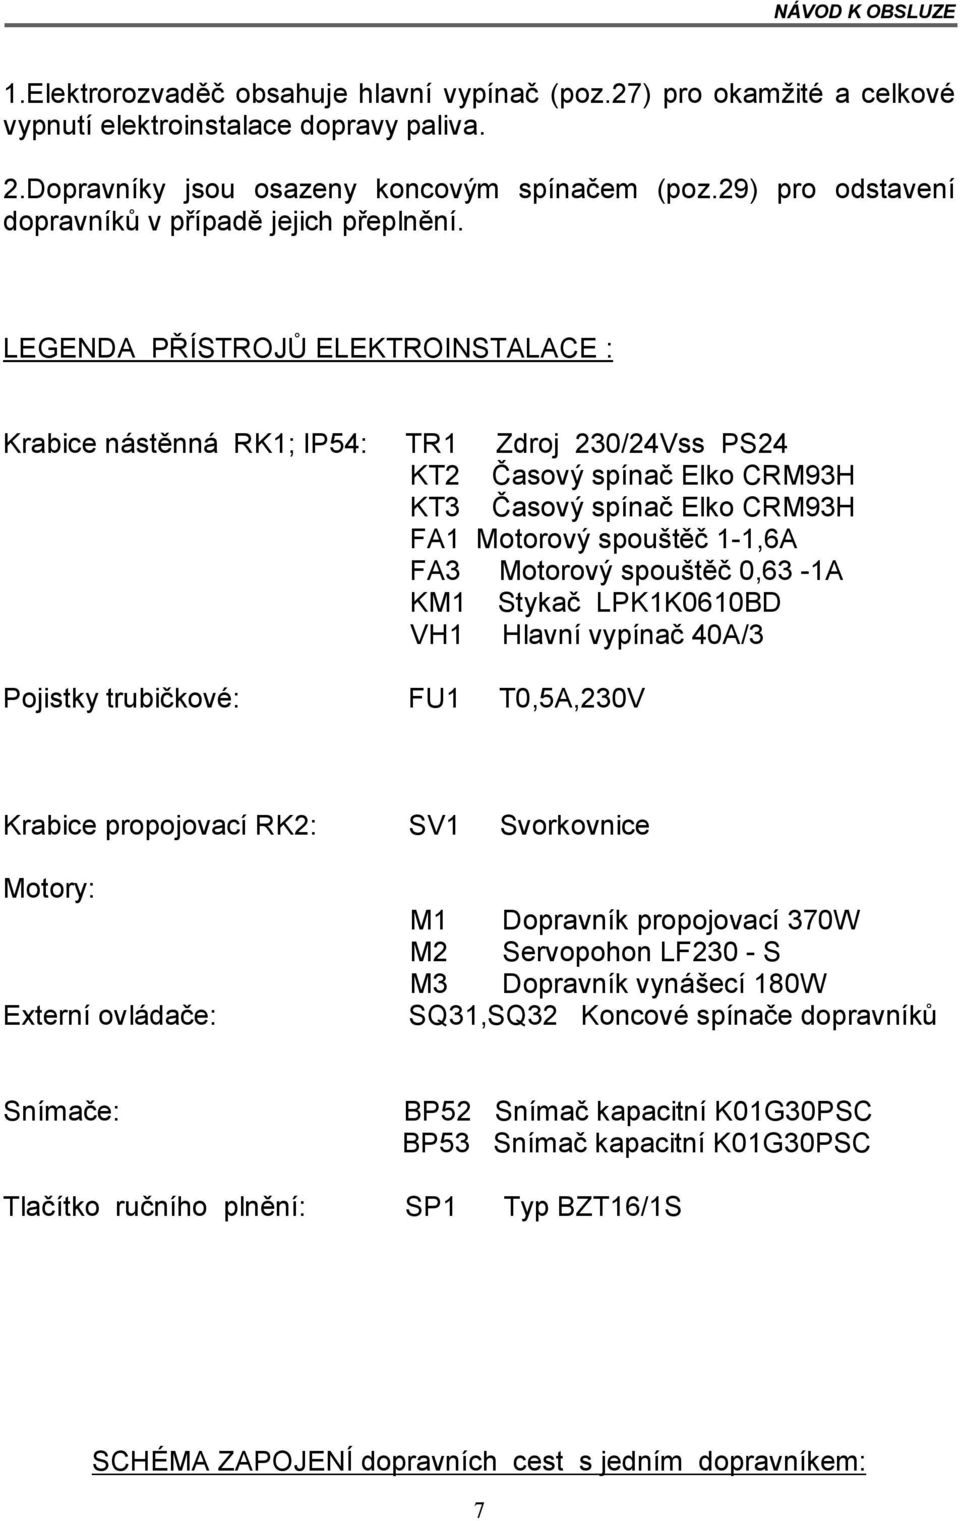 LEGENDA PŘÍSTROJŮ ELEKTROINSTALACE : Krabice nástěnná RK1; IP54: TR1 Zdroj 230/24Vss PS24 KT2 Časový spínač Elko CRM93H KT3 Časový spínač Elko CRM93H FA1 Motorový spouštěč 1-1,6A FA3 Motorový